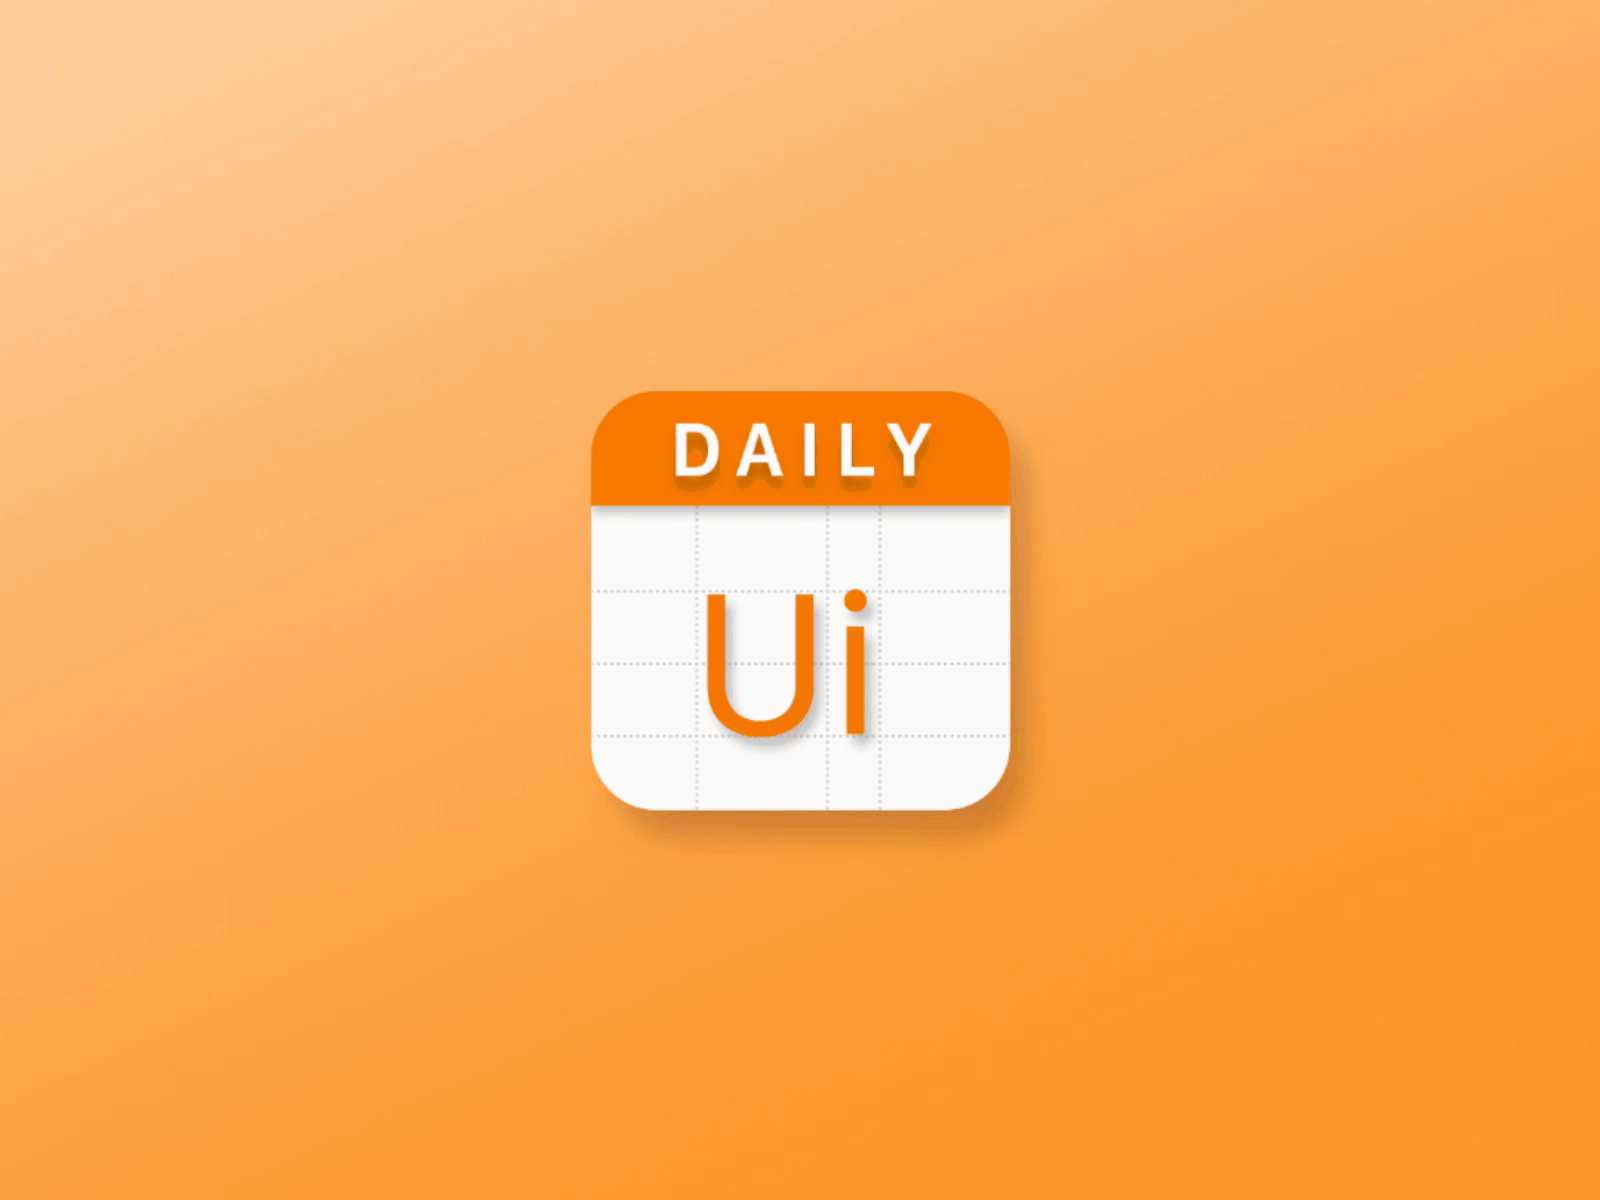 DailyUI #52 Daily Ui Icon daily ui dailyui design icon motion ui